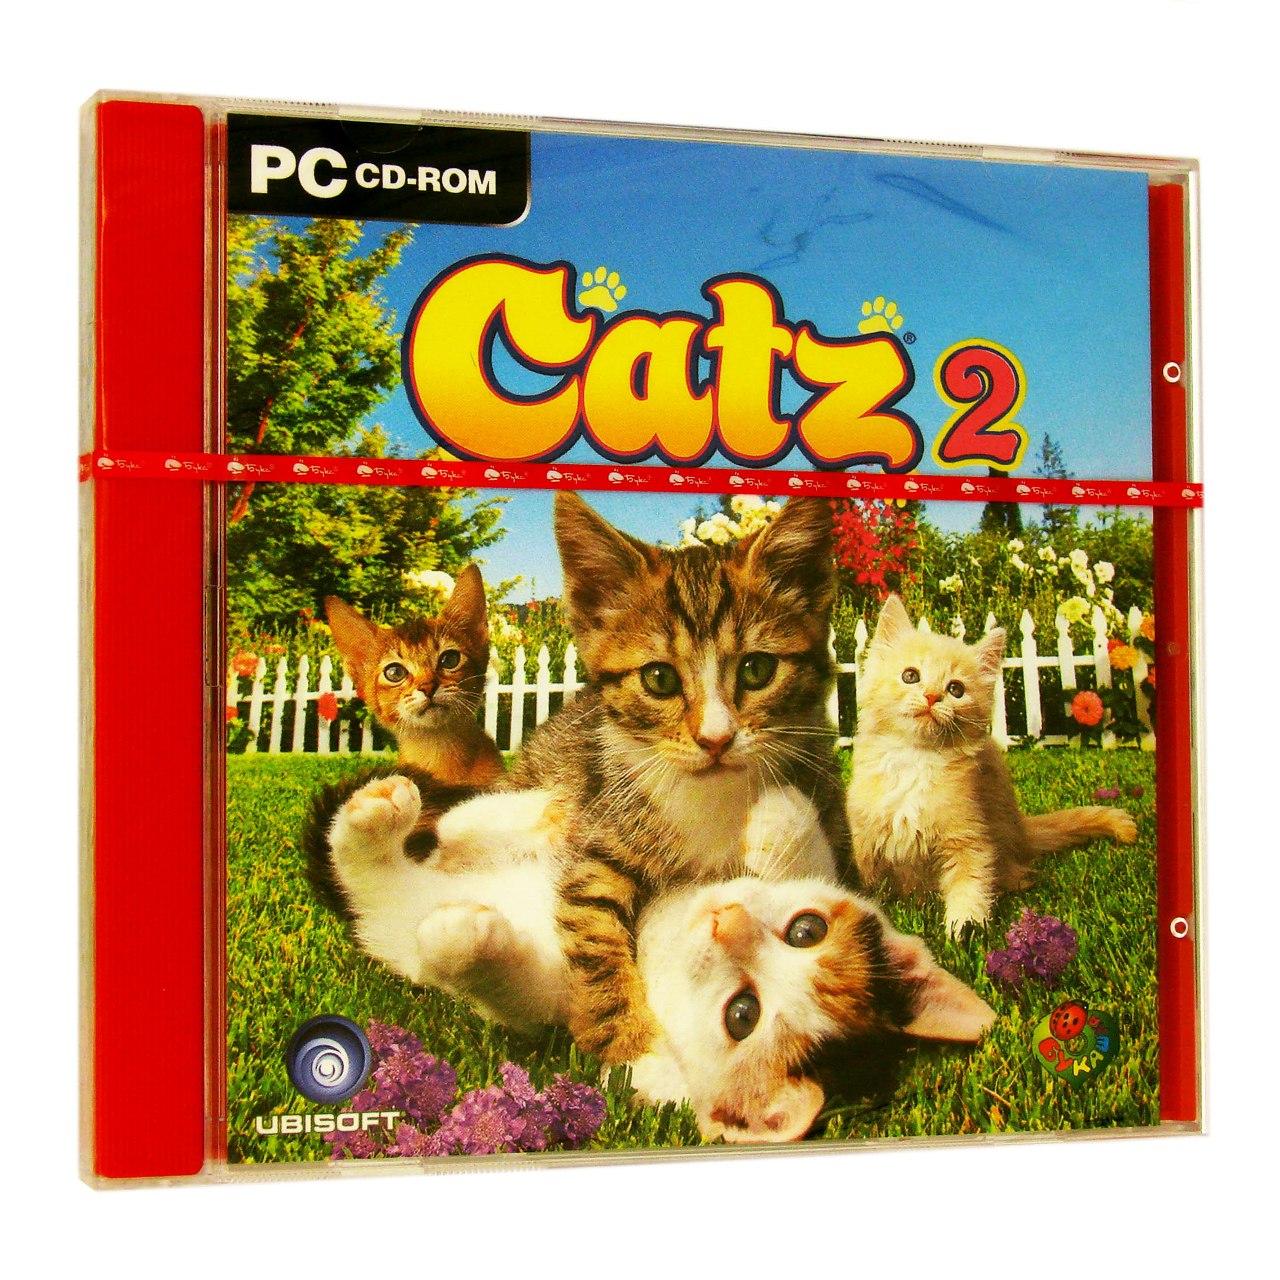 Компьютерный компакт-диск Catz 2 (PC), фирма "Бука", 1CD